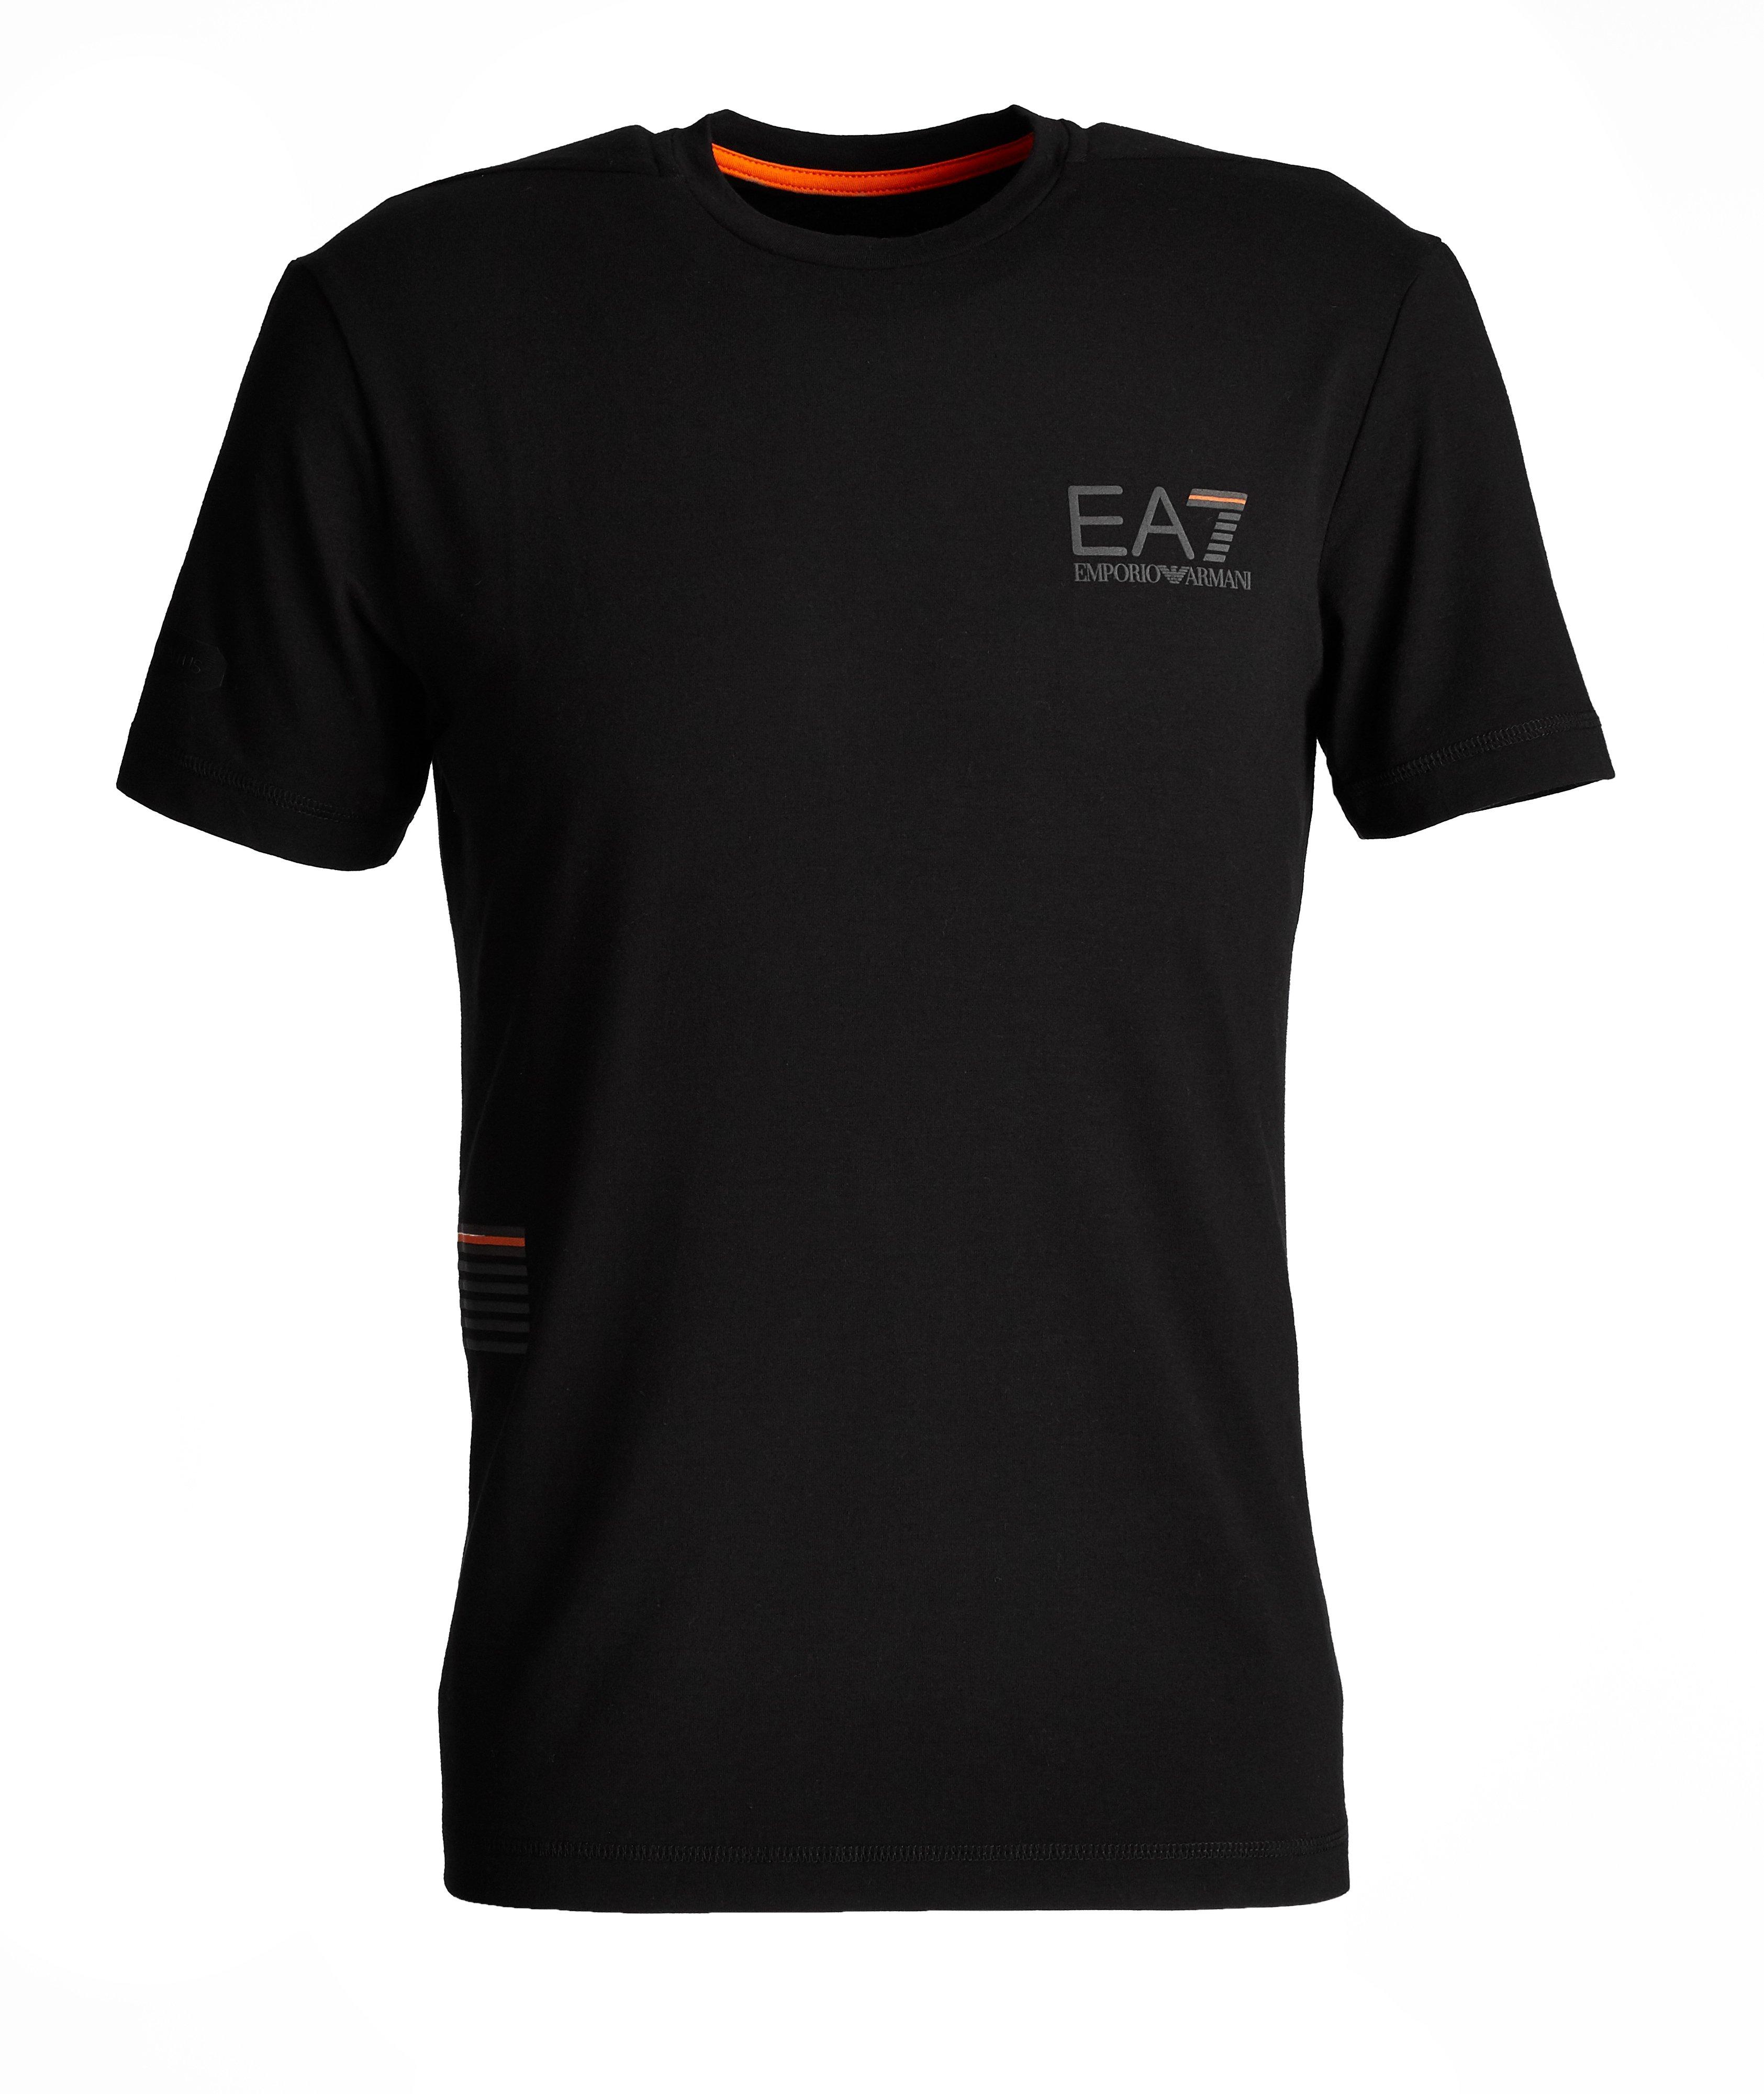 T-shirt en mélange de coton, collection EA7 image 0